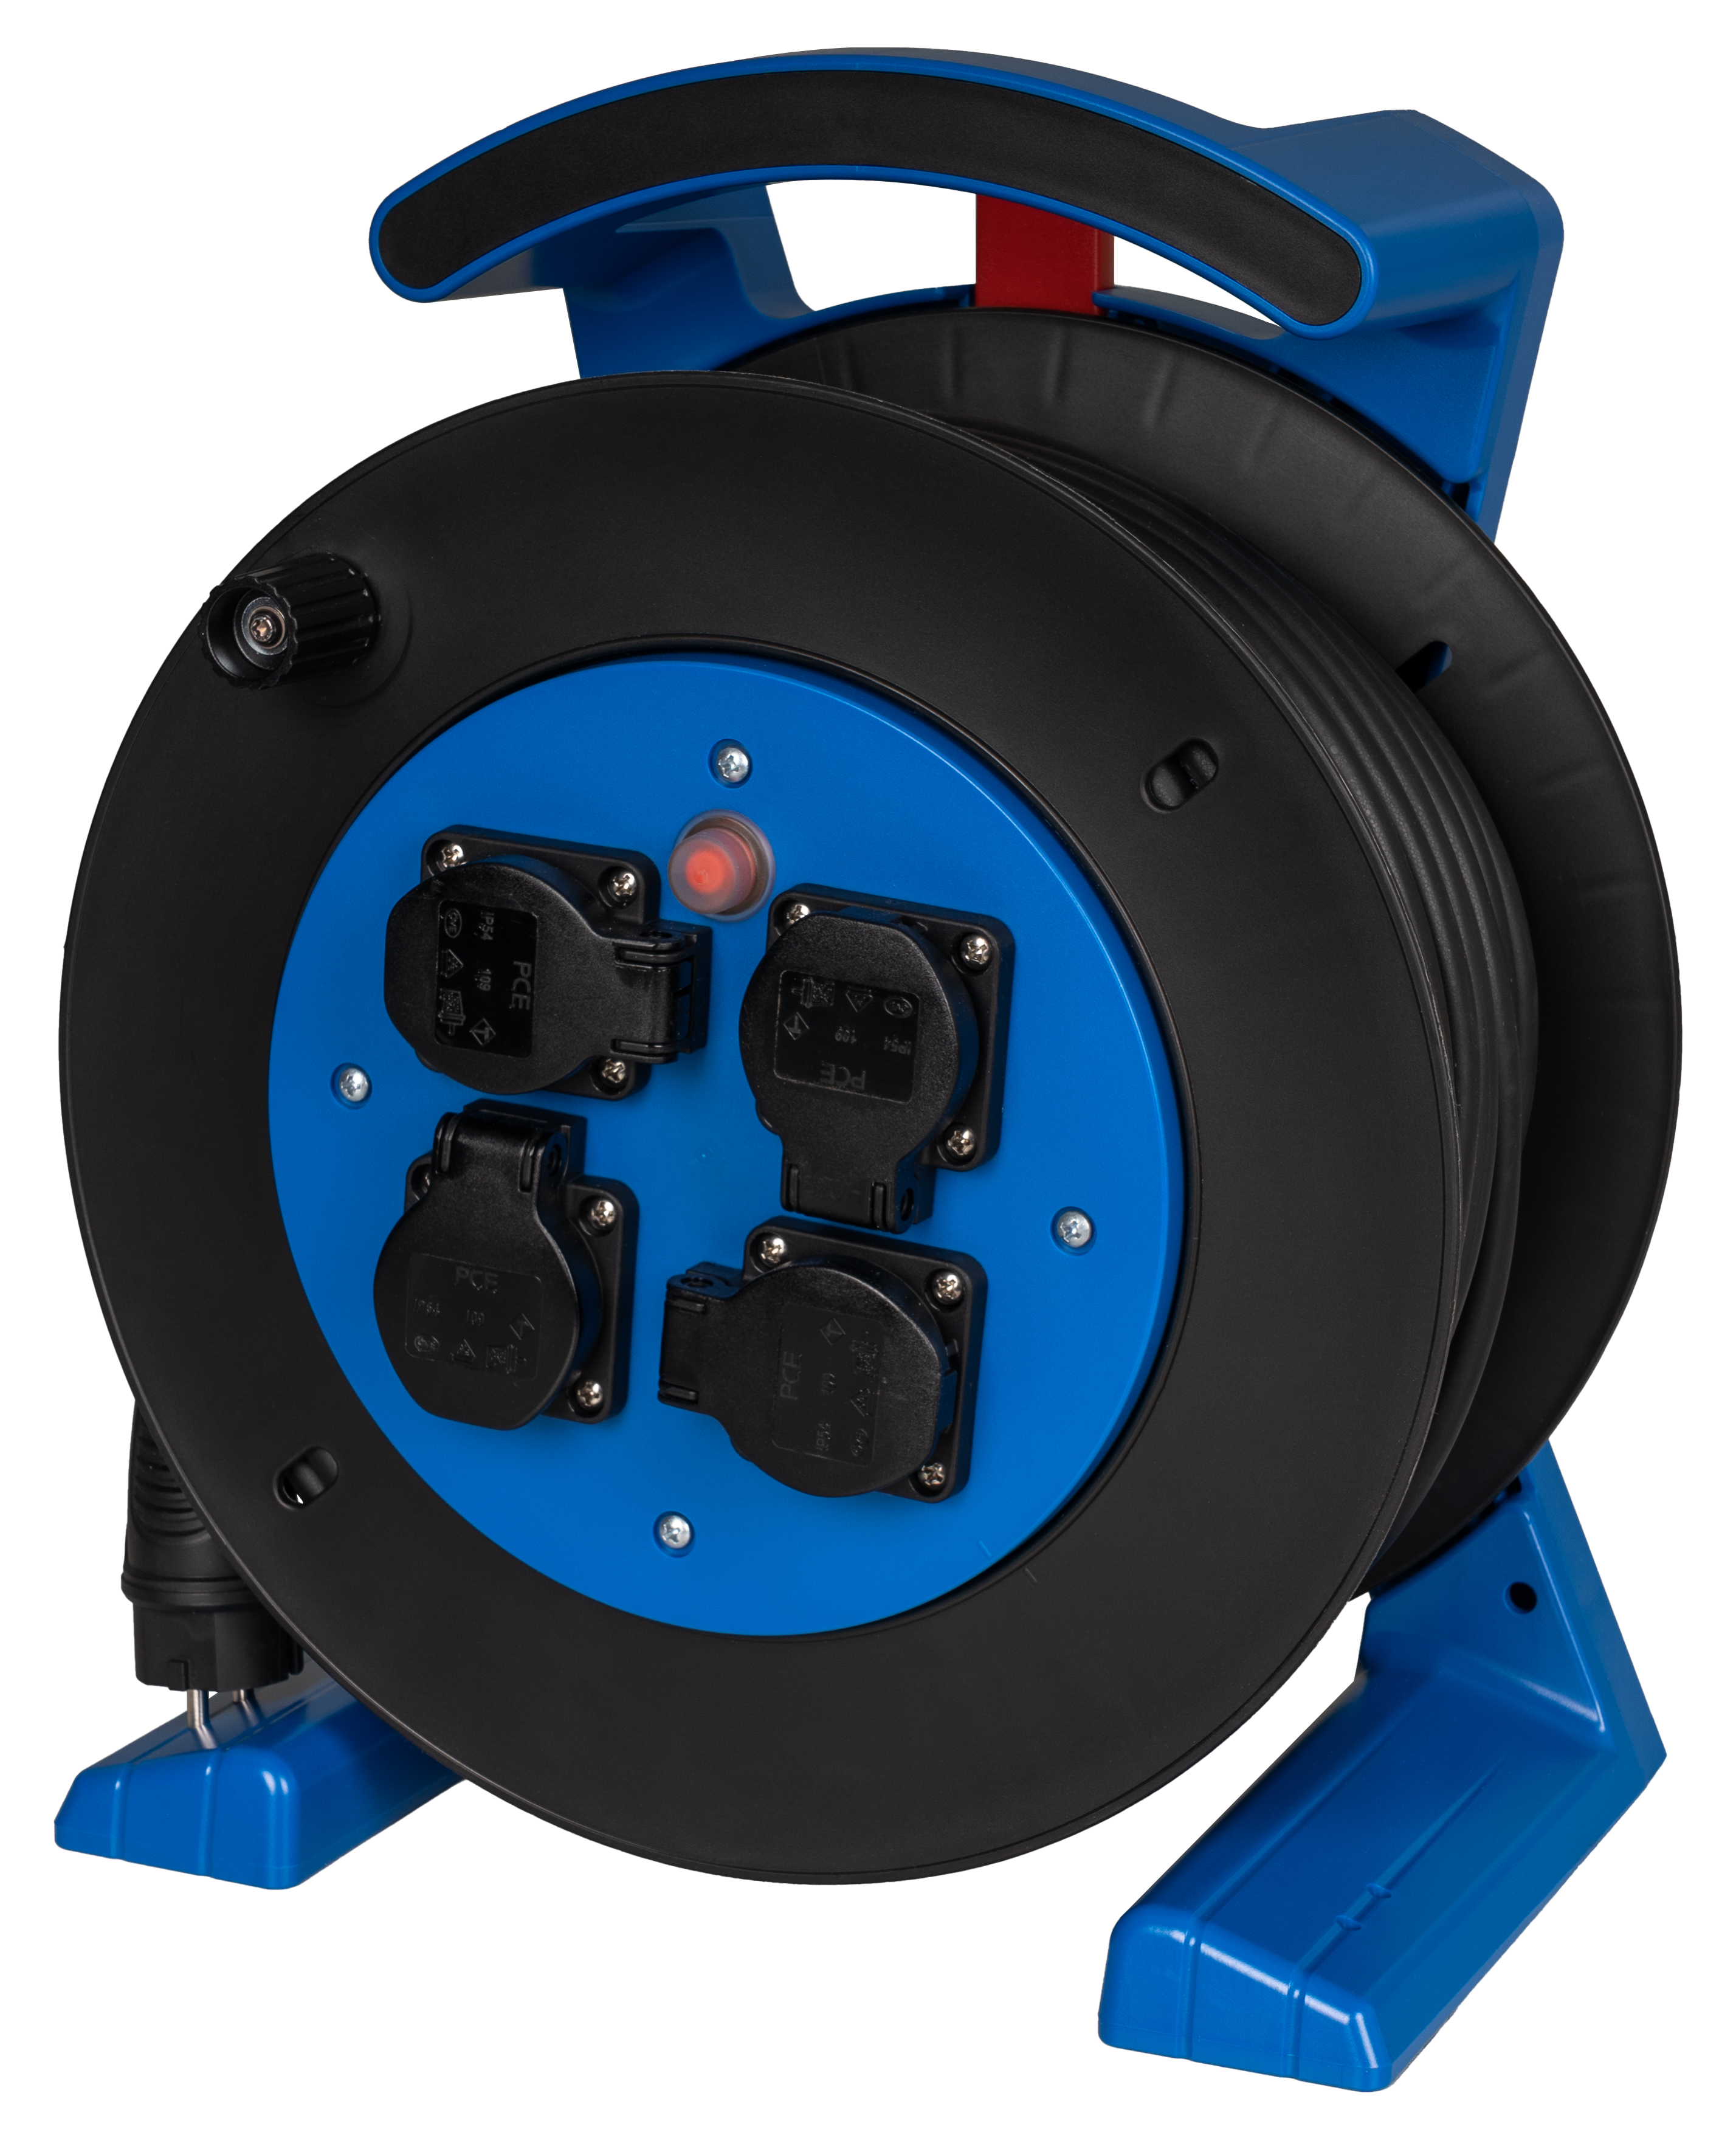 Kabeltrommel blau-schwarz, 4 x Schutzkontakt-Steckdose, H07RN-F 3 G 2,5 mm², 25 m JUMBO L 2.0